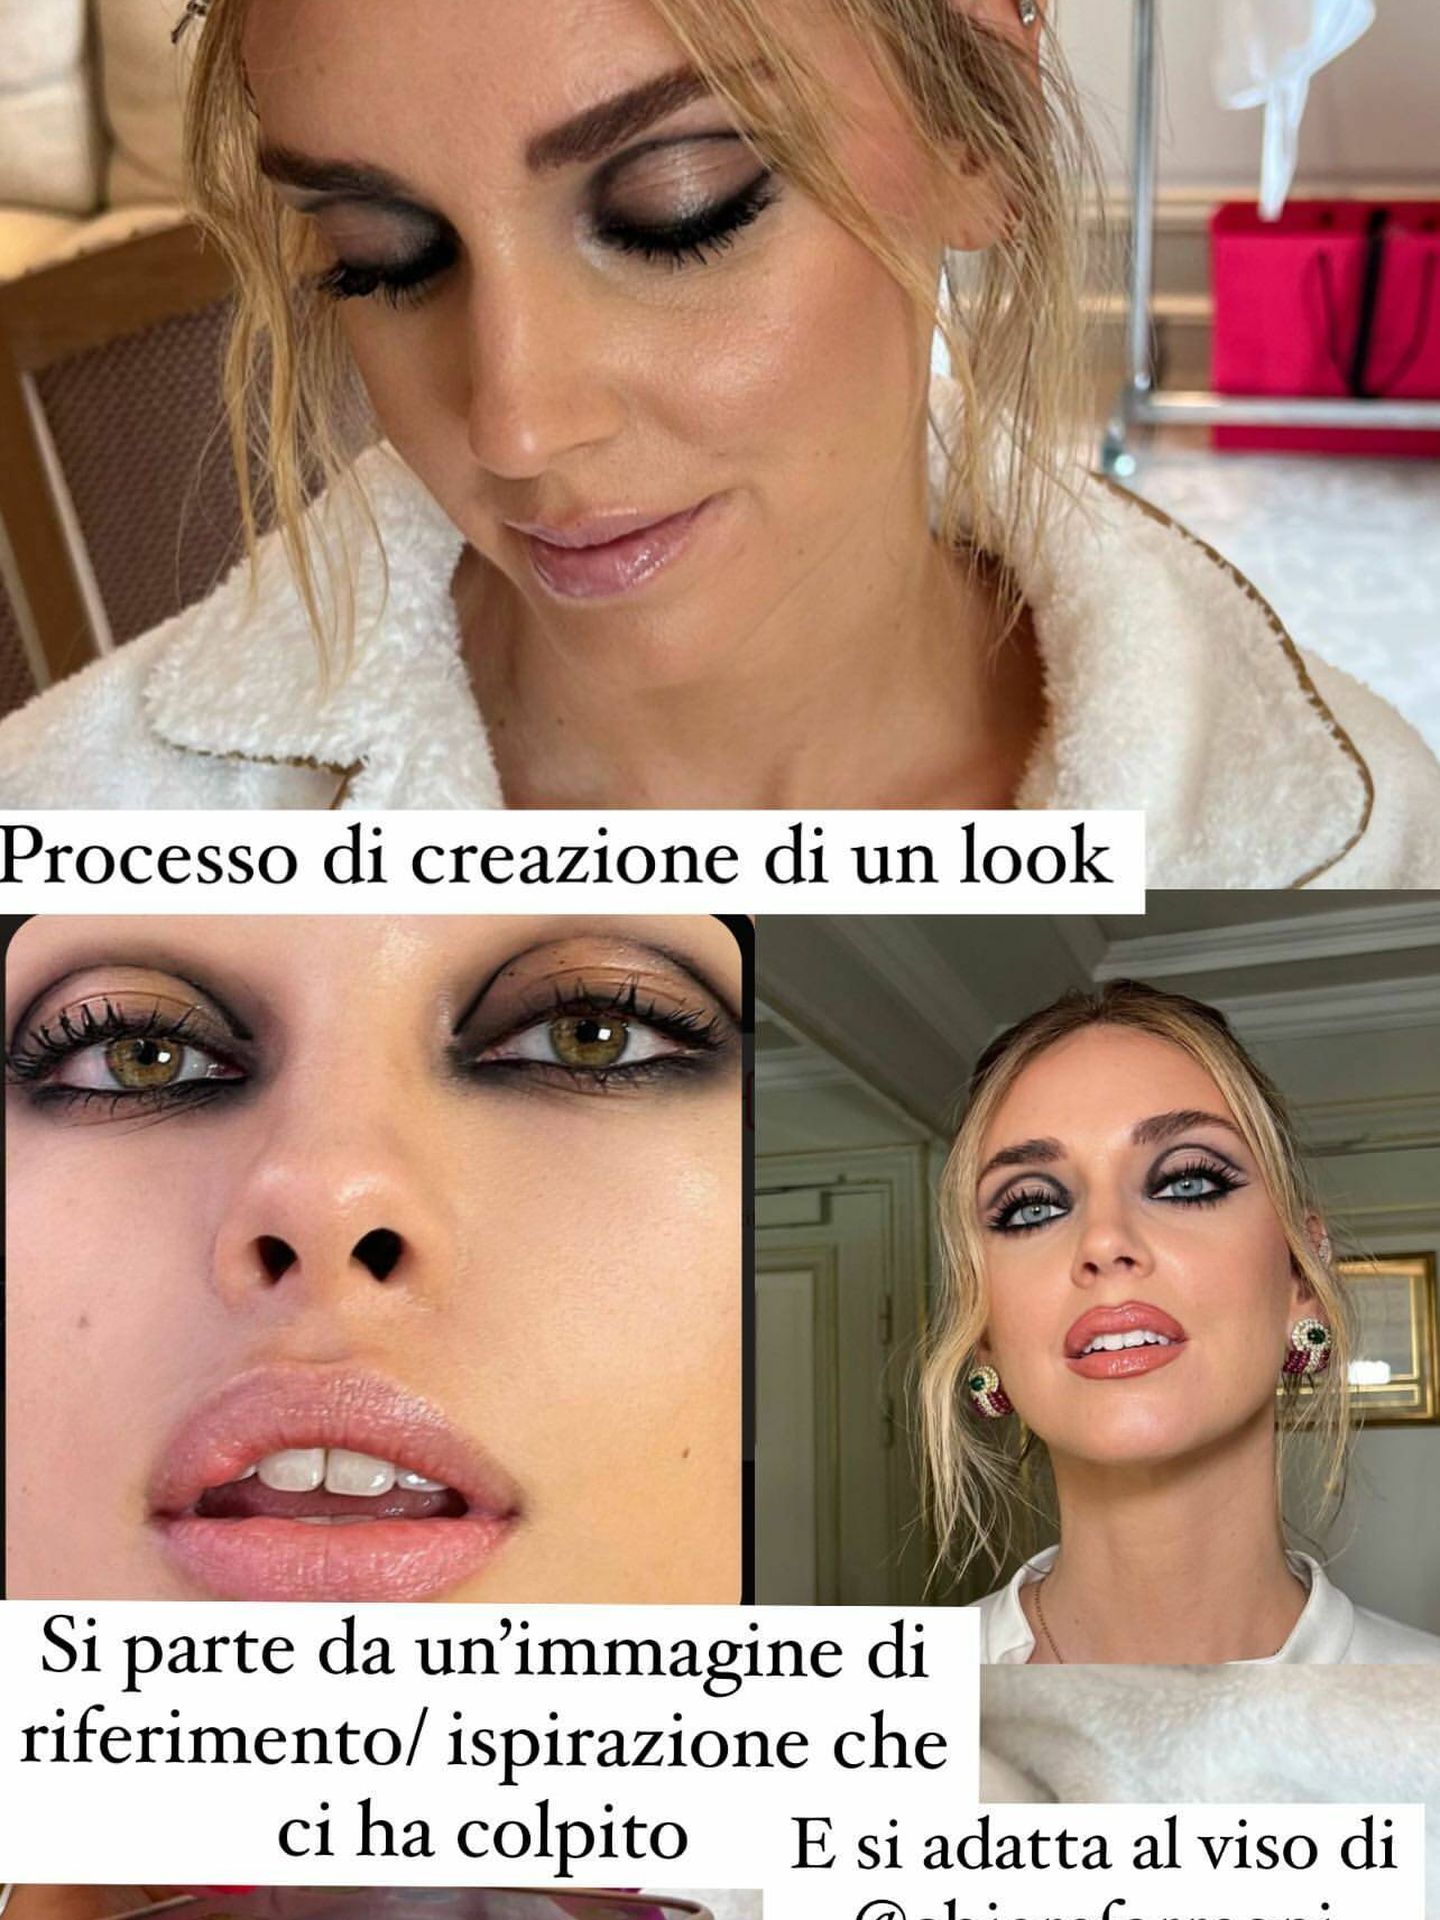 El proceso de creación del maquillaje de Chiara Ferragni. (Instagram/@manuelemameli)